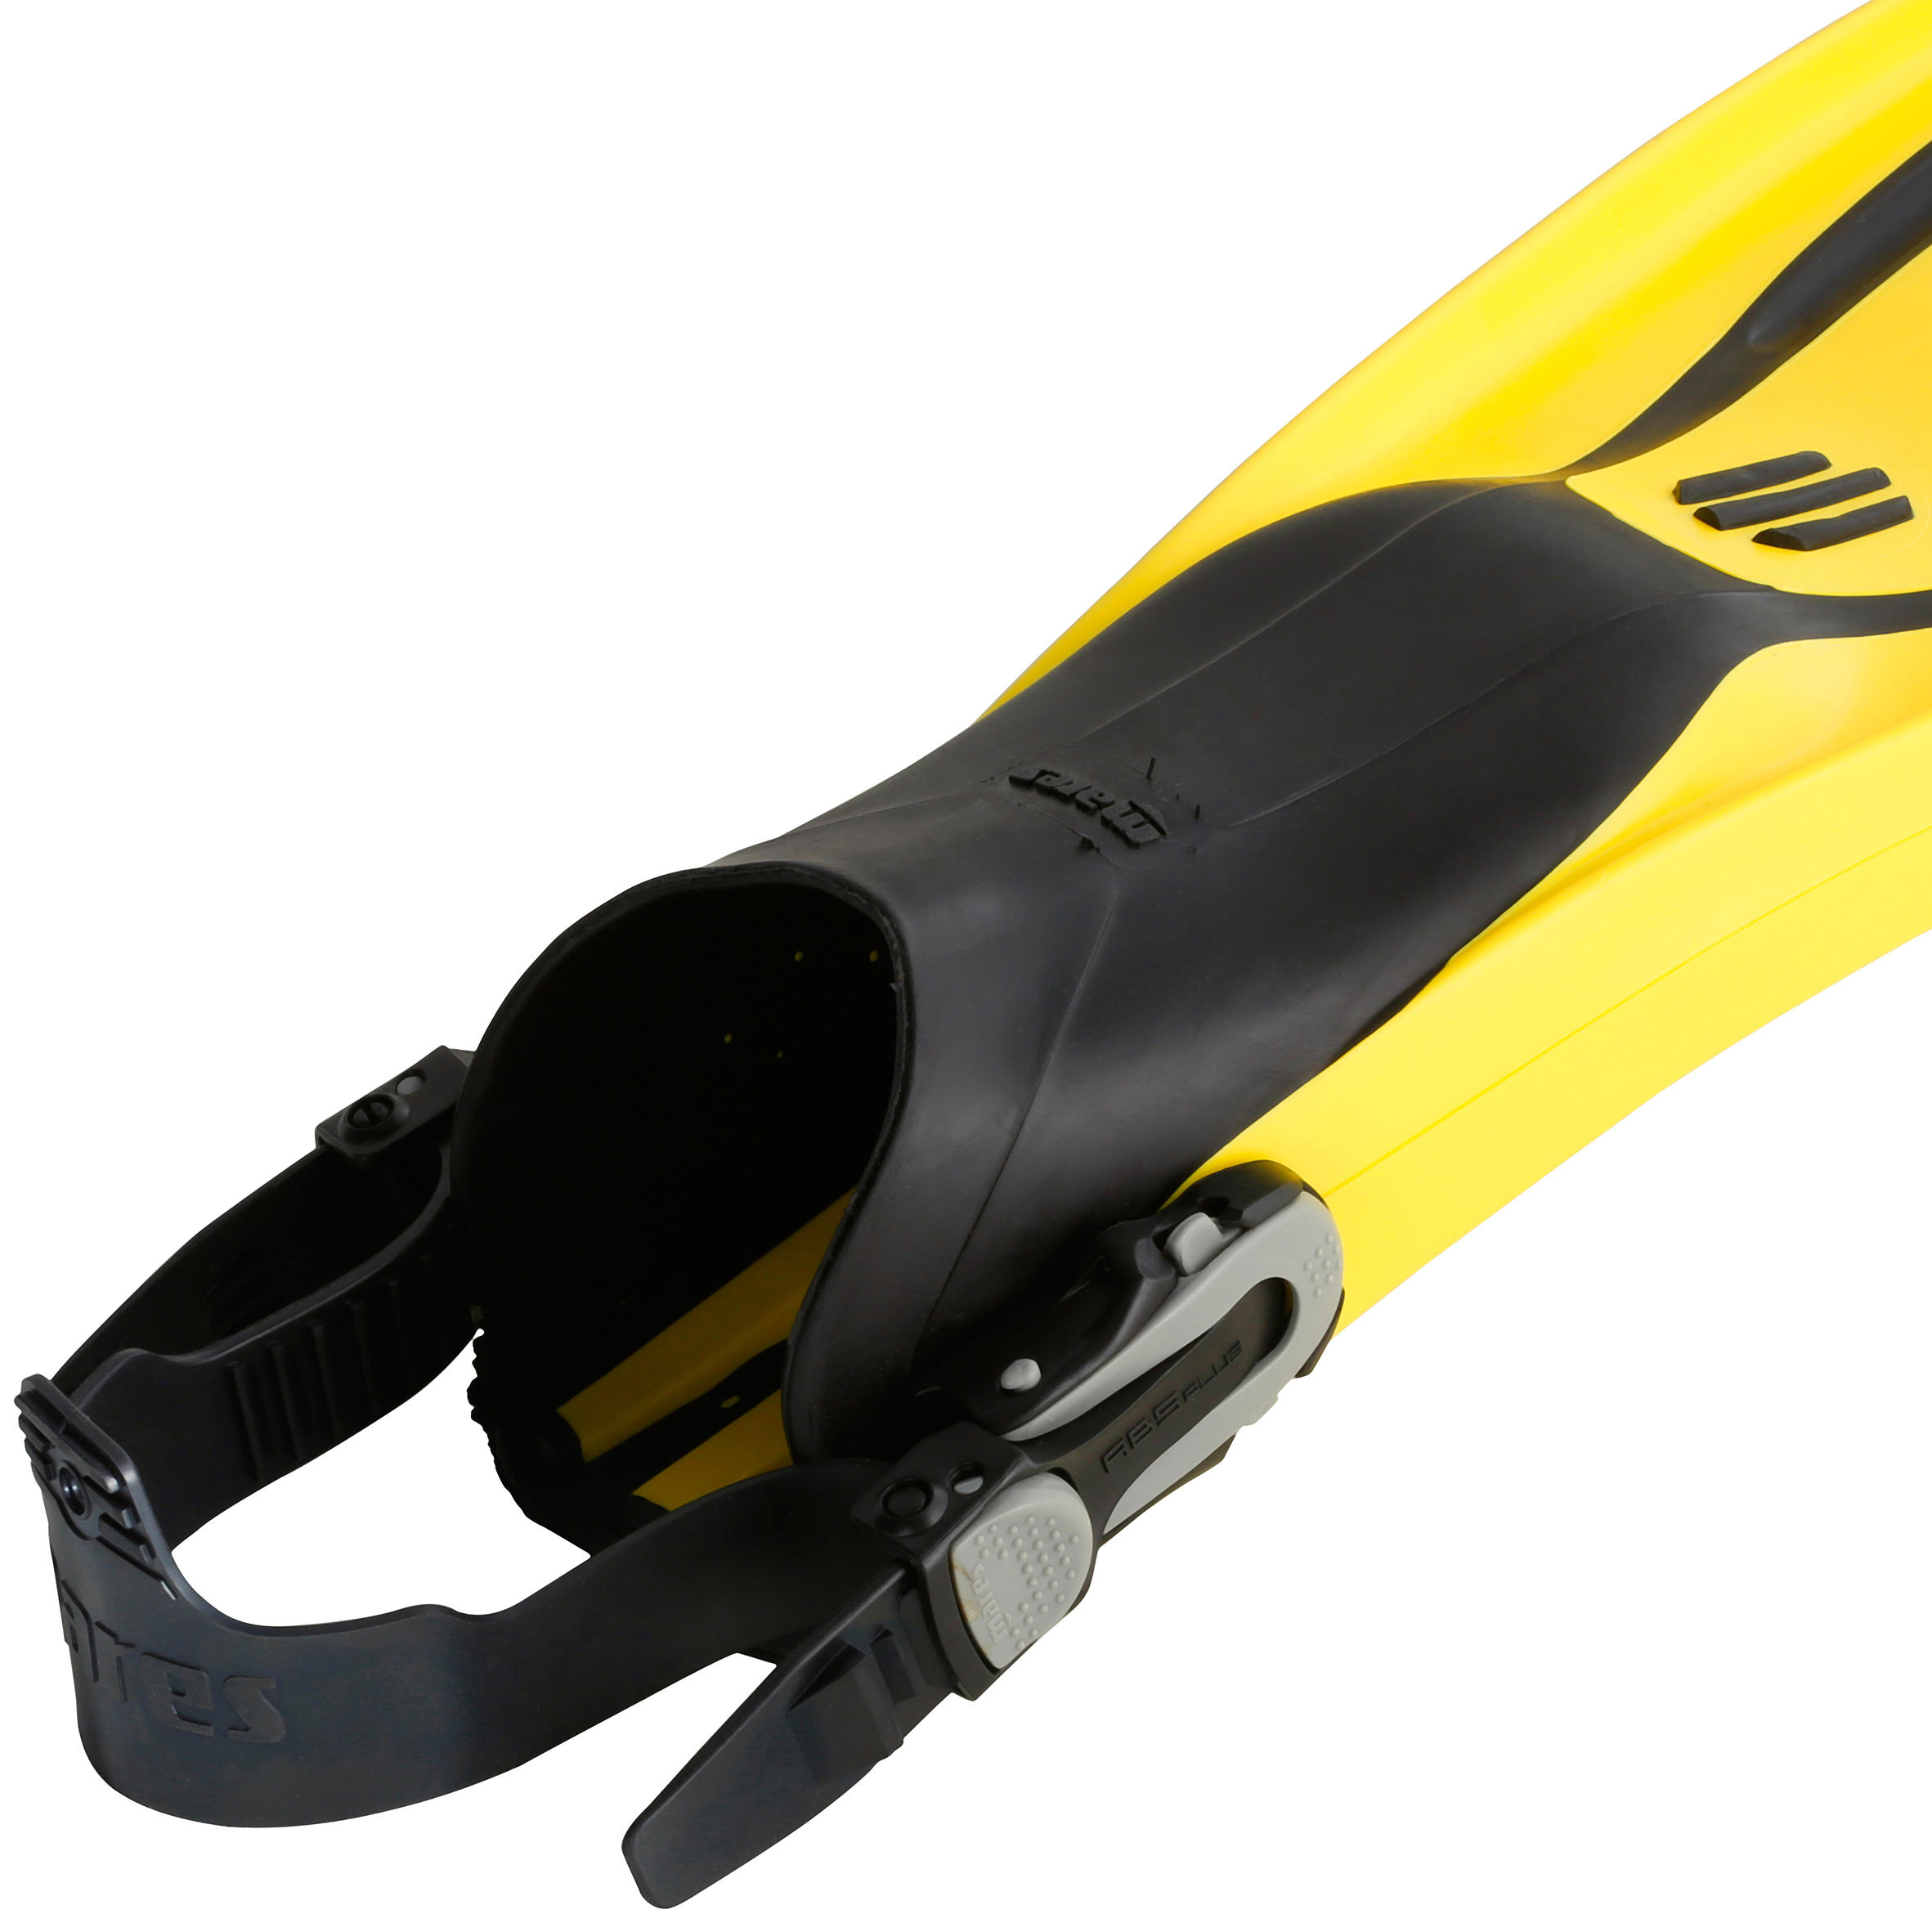 AVANTI SUPERCHANNEL ABS Adjustable Scuba Diving Fins yellow/ black 5/11